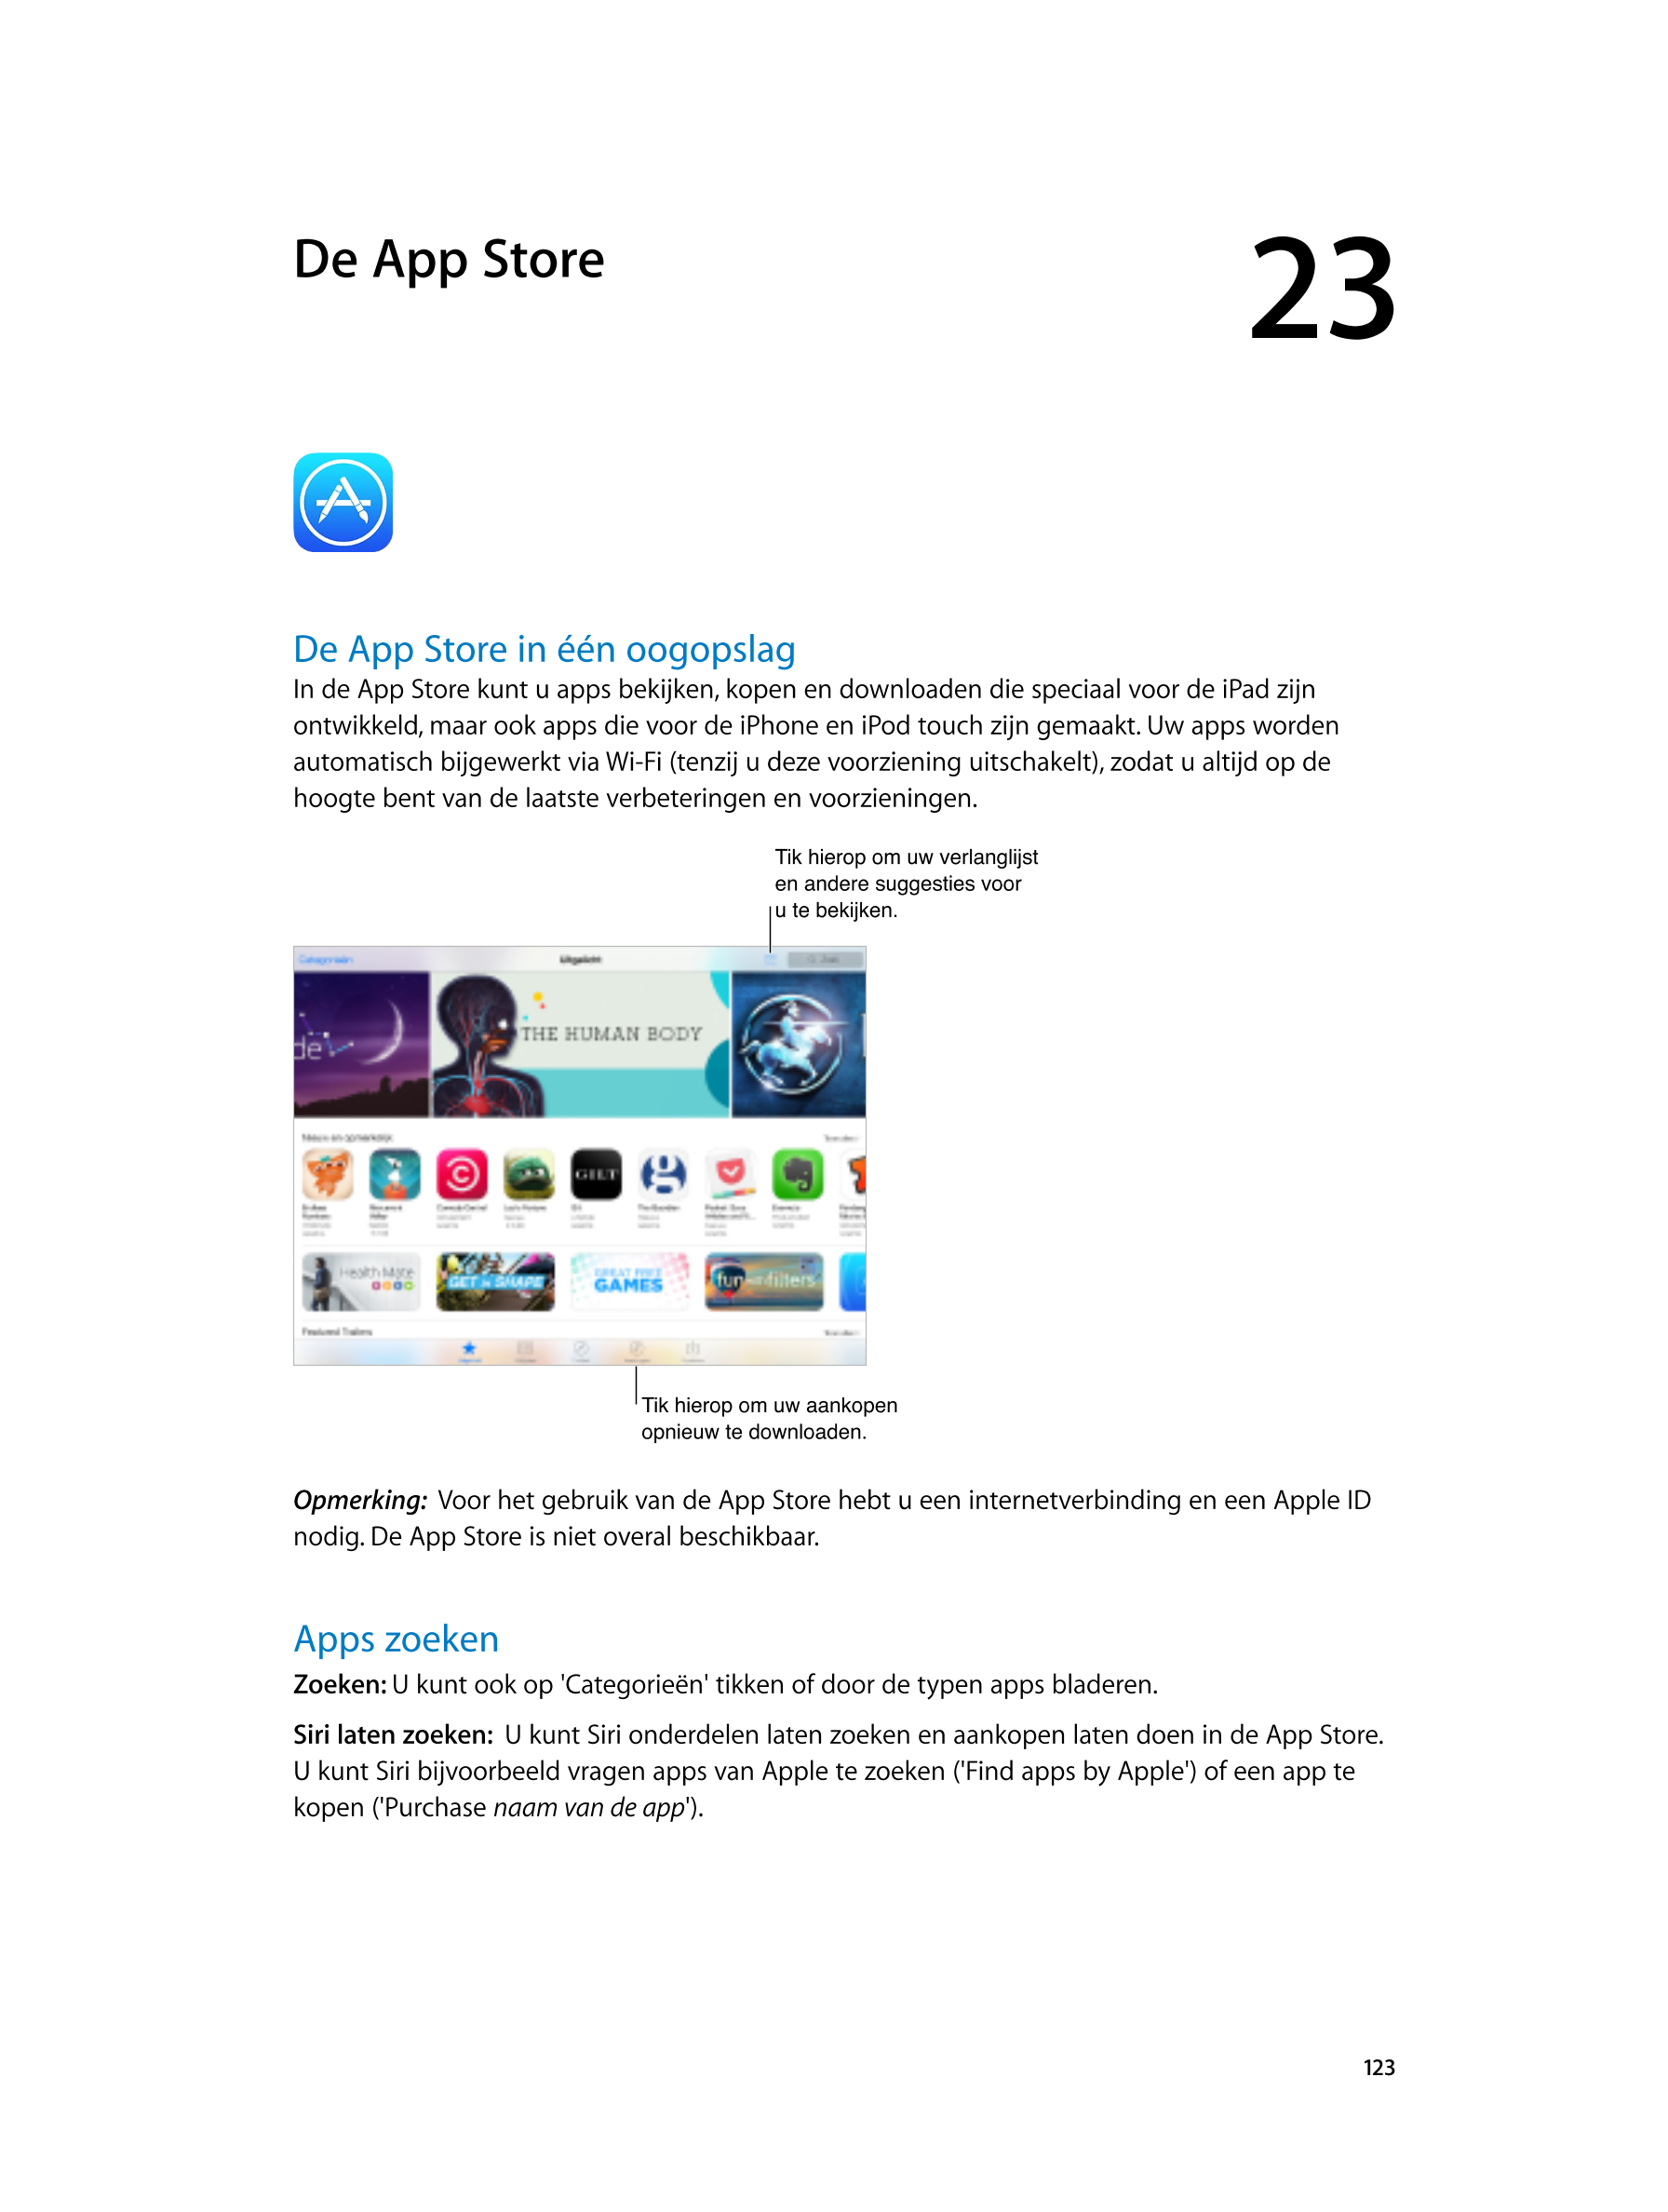  De App  Store 23  
De App  Store in één oogopslag
In de App  Store kunt u apps bekijken, kopen en downloaden die speciaal voor 